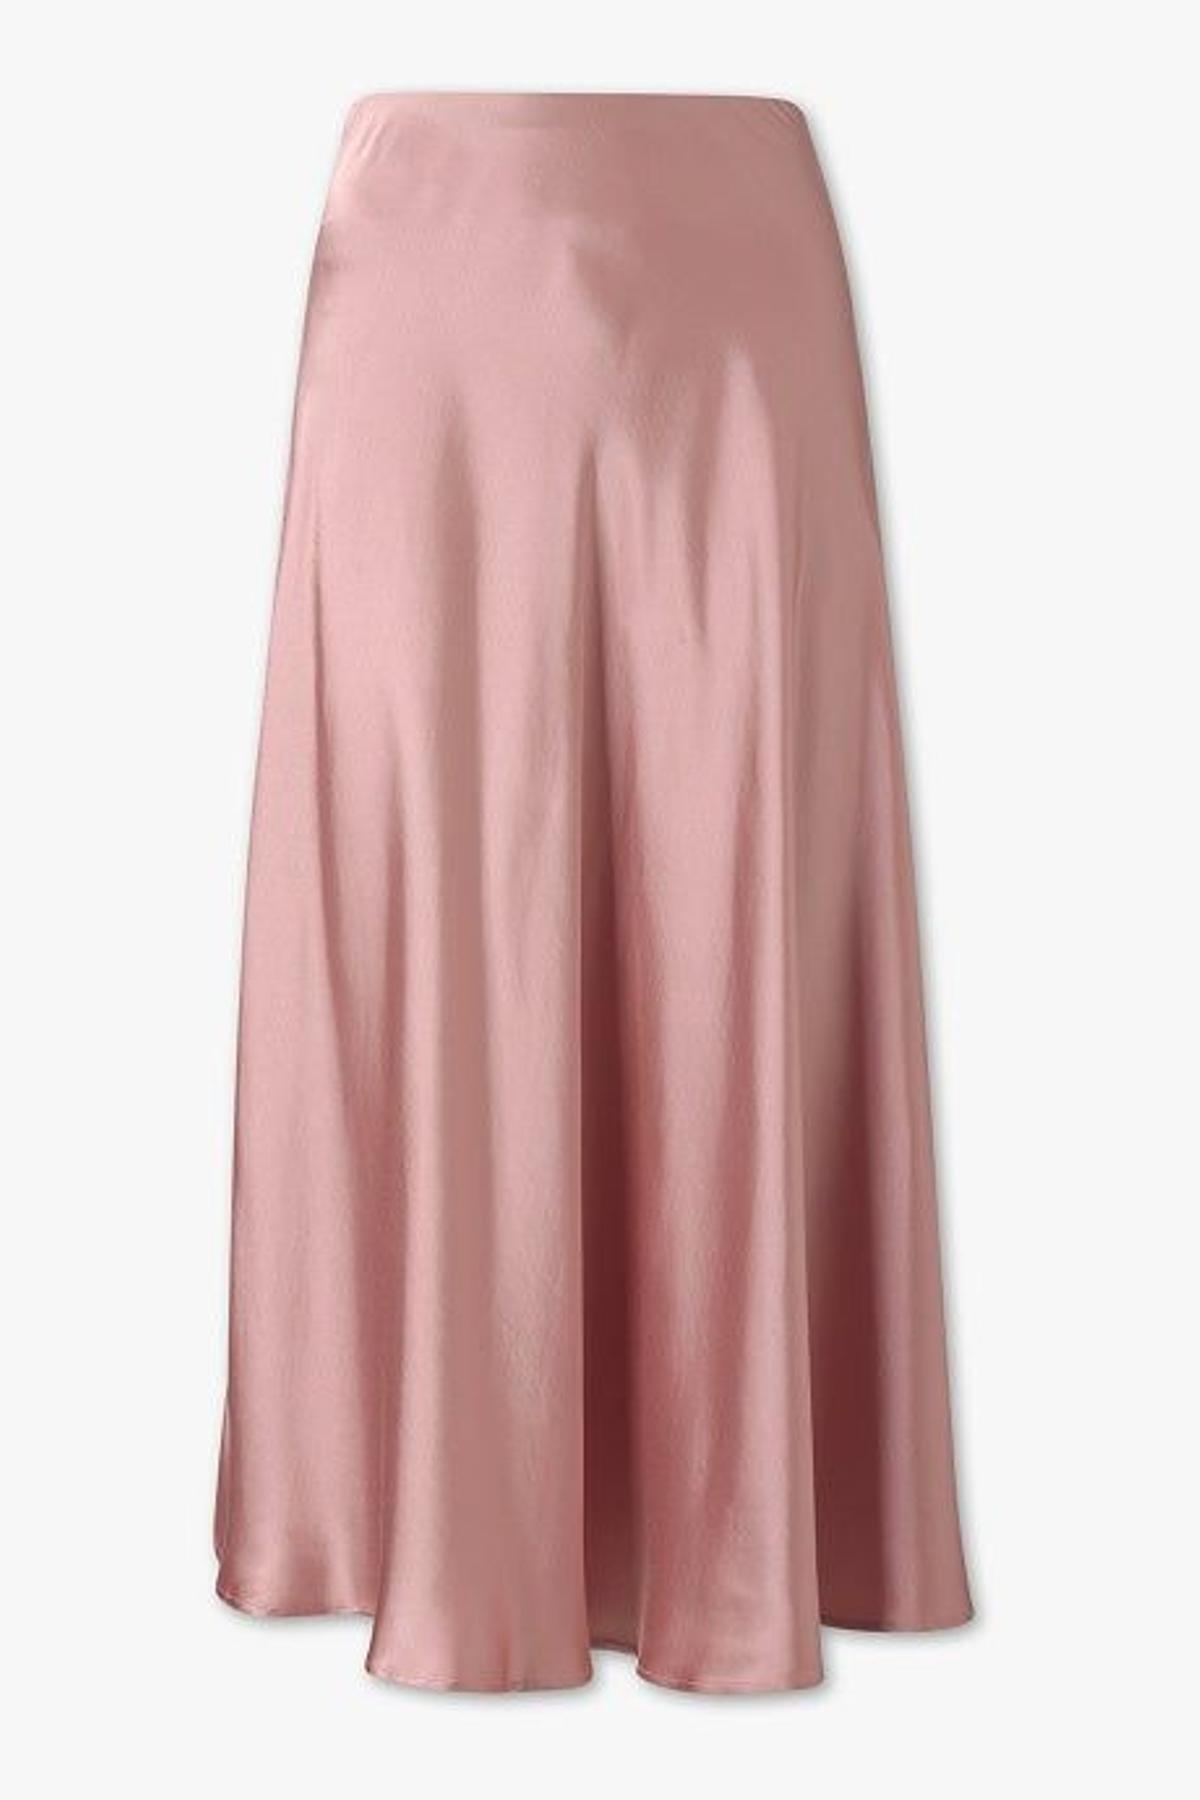 Falda de raso rosa (Precio: 11,90 euros)